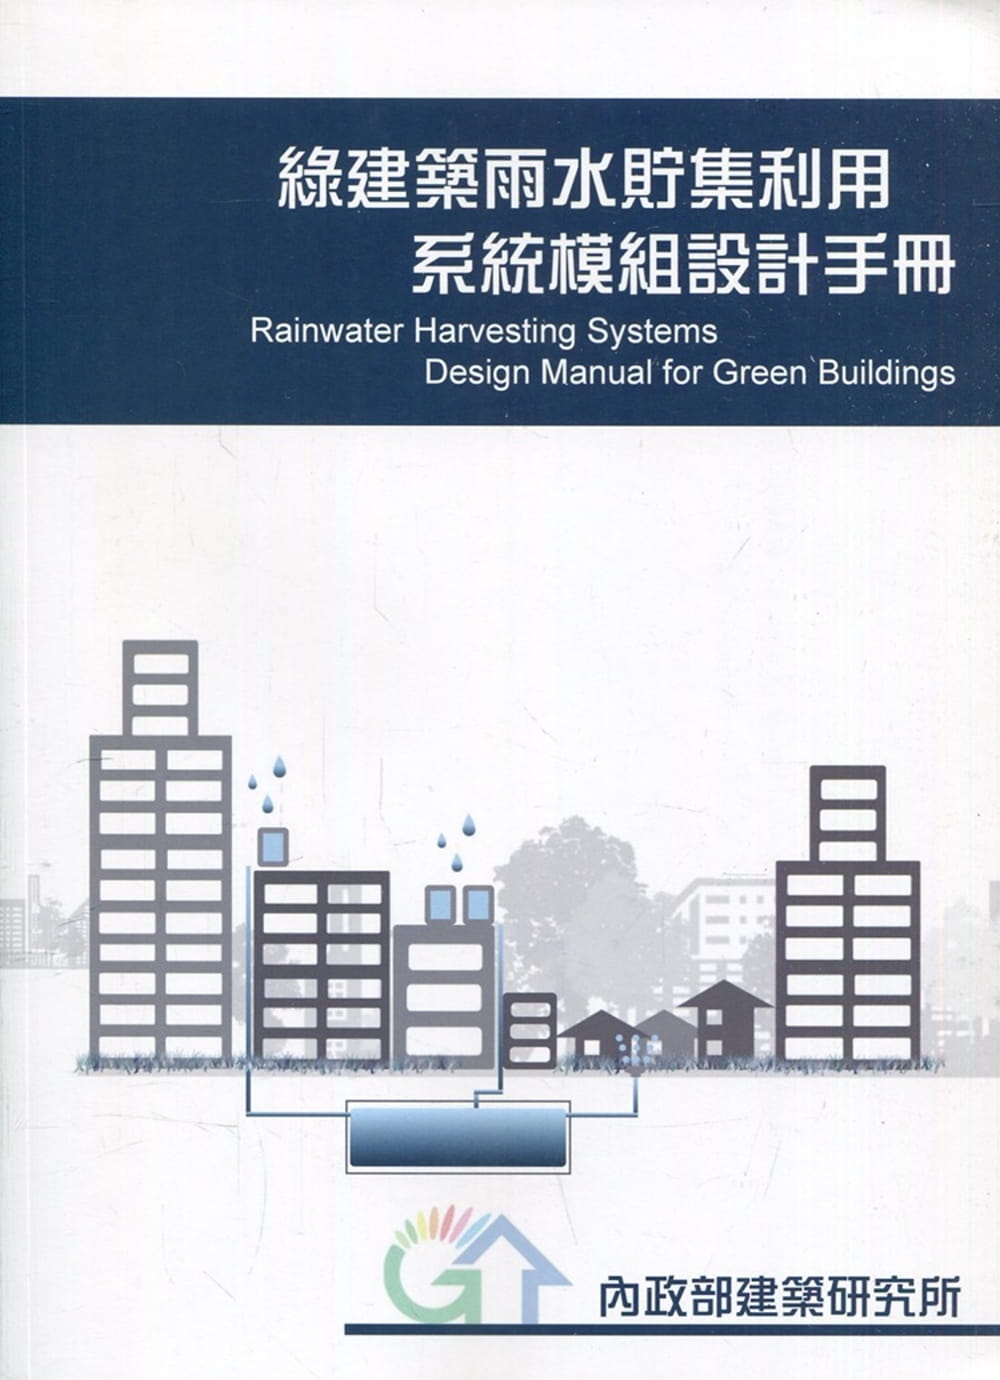 綠建築雨水貯集利用系統模組設計手冊